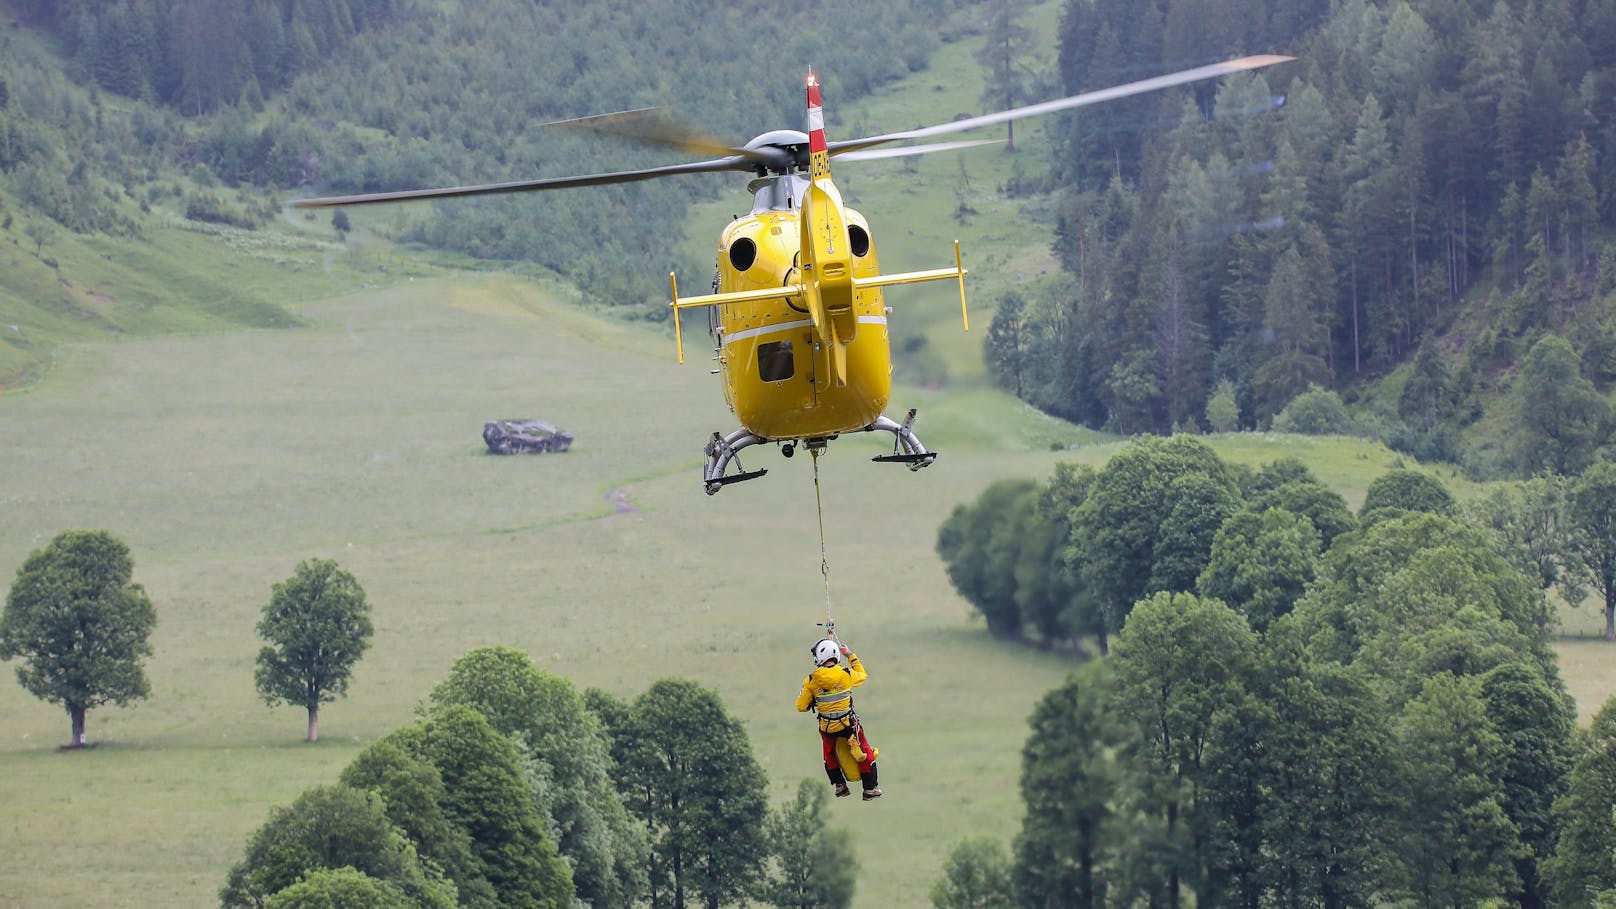 Hilfeschreie im Wald – Tiroler stürzte 30 Meter tief